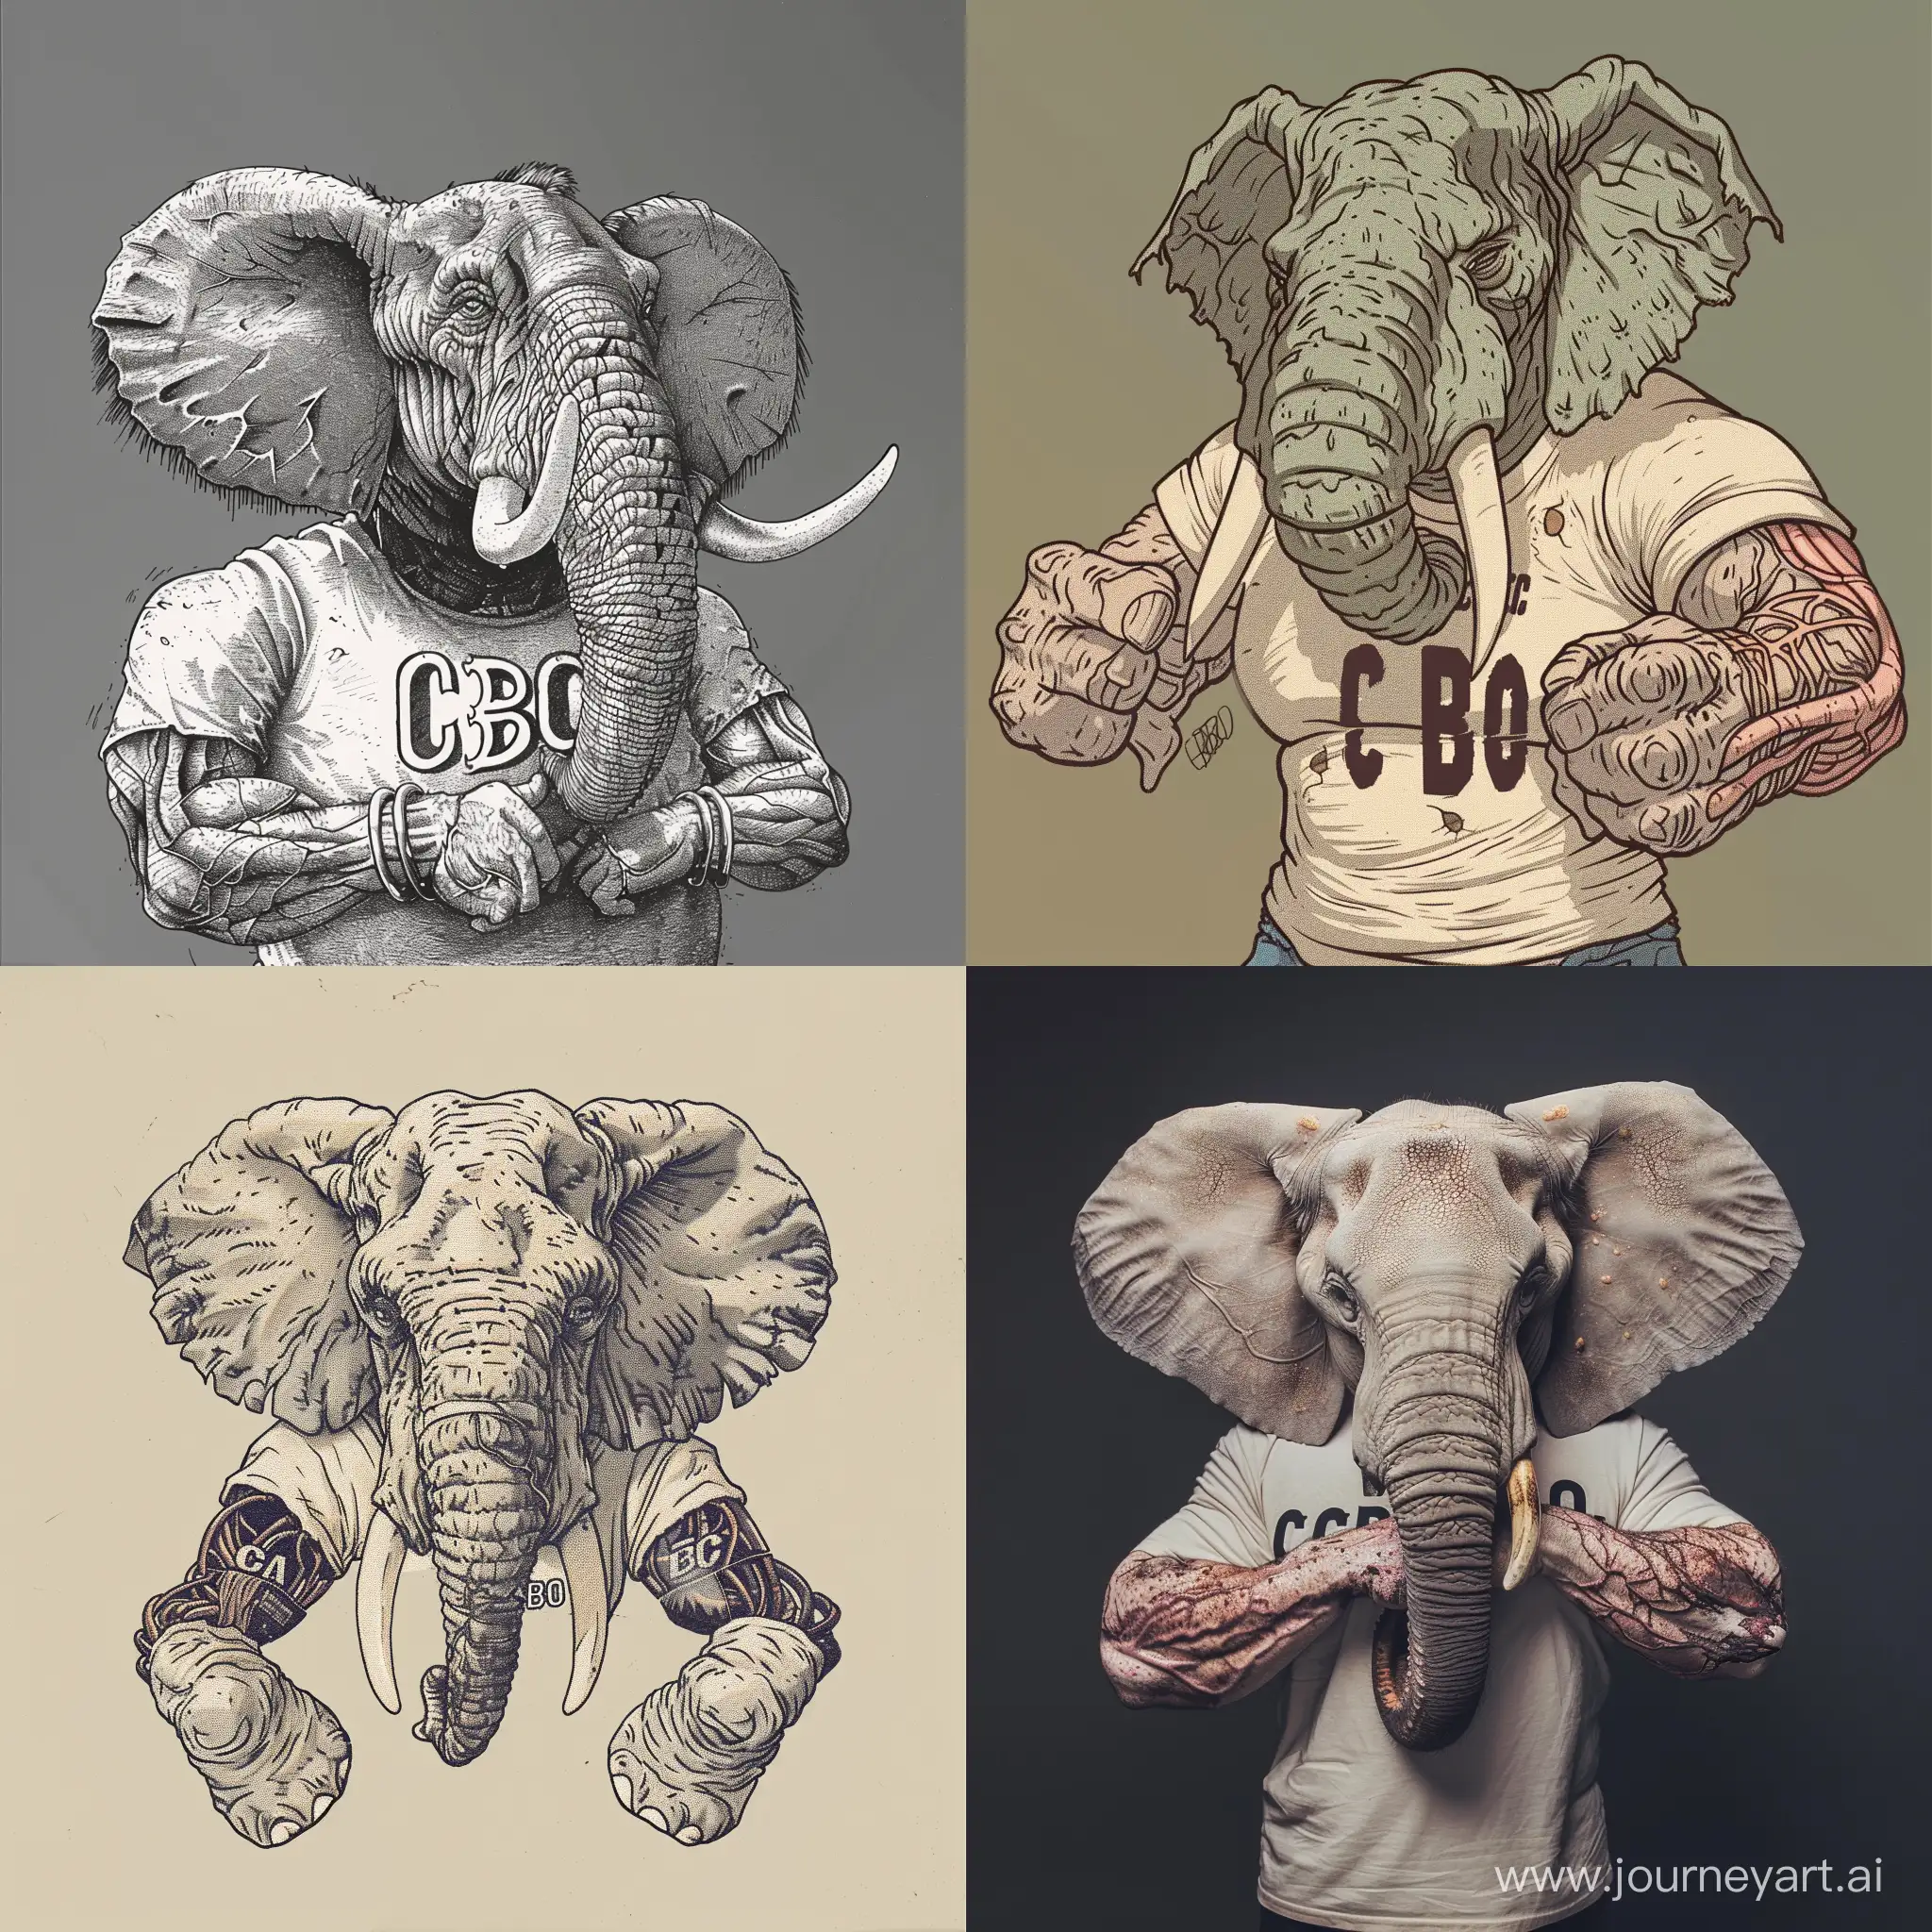 Накаченный слон с венистыми руками, у которого на футболке написано "СВО"